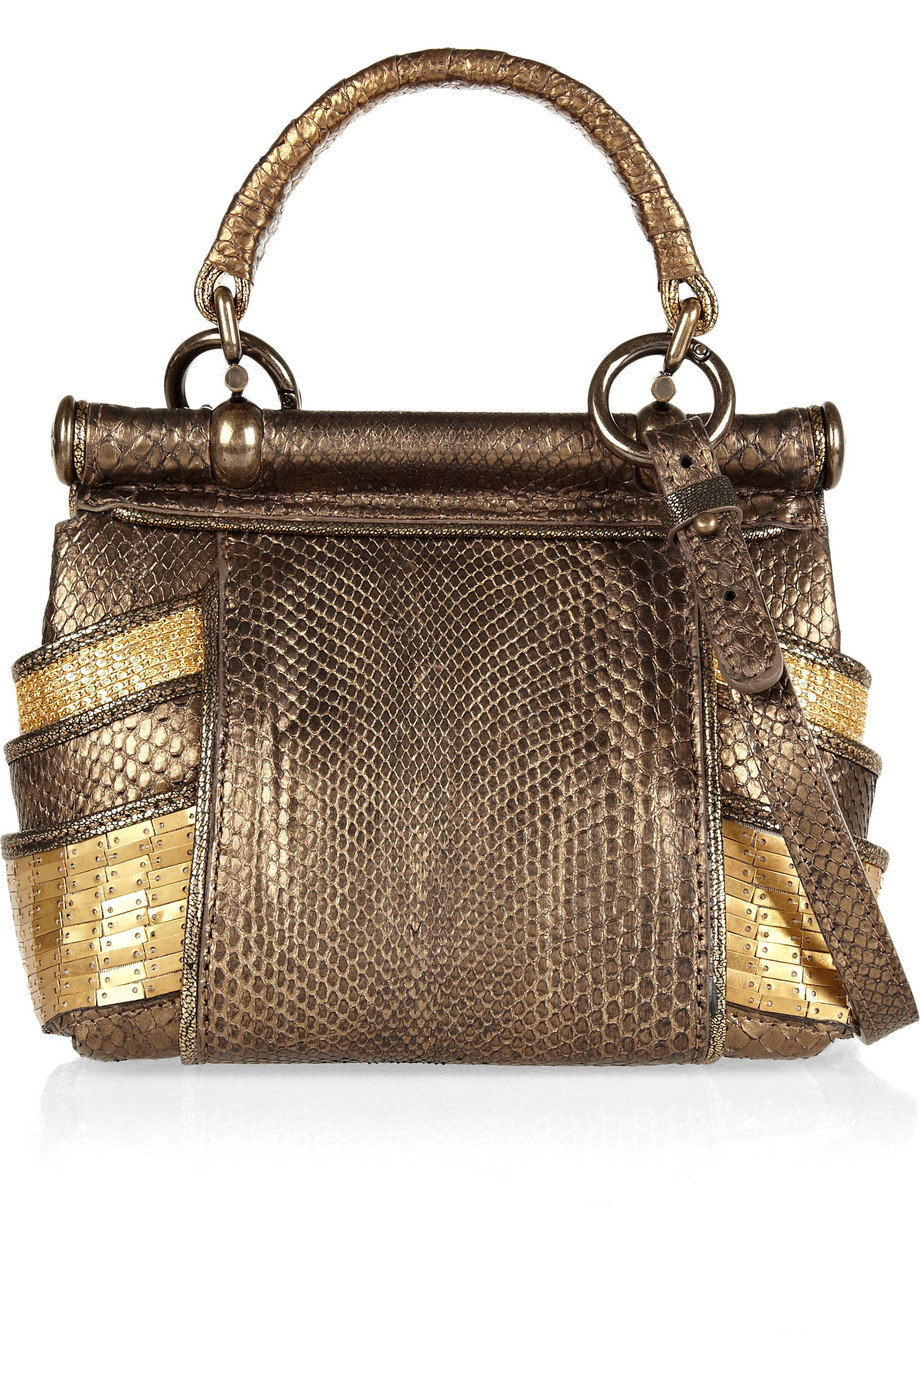 Roberto Cavalli Diva Embellished Python Shoulder Bag in Brown - Lyst